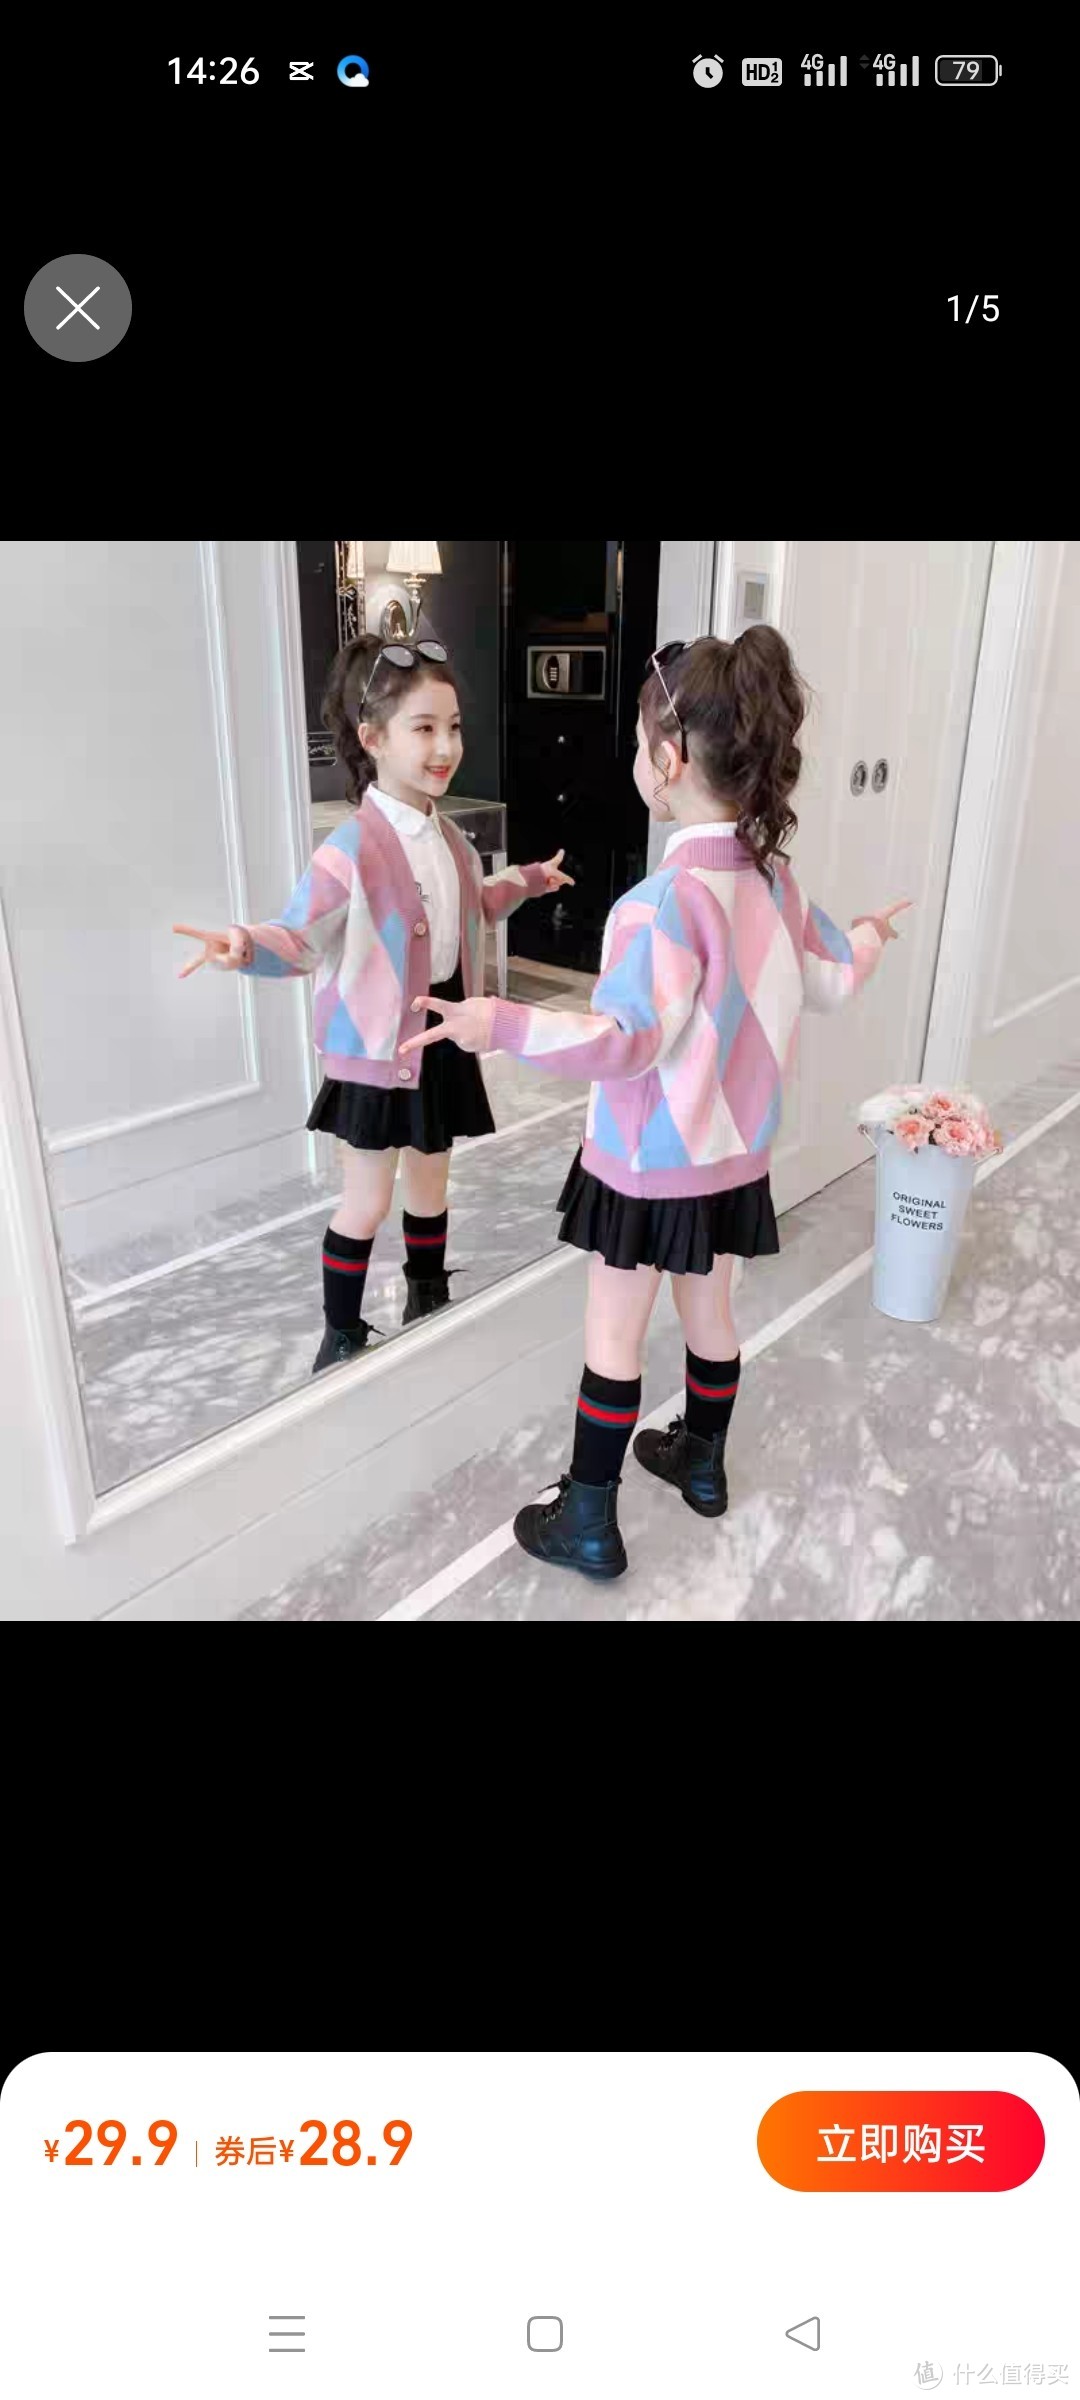 女童秋装毛衣开衫新款2022韩版洋气儿童针织衫中童装长袖上衣外套